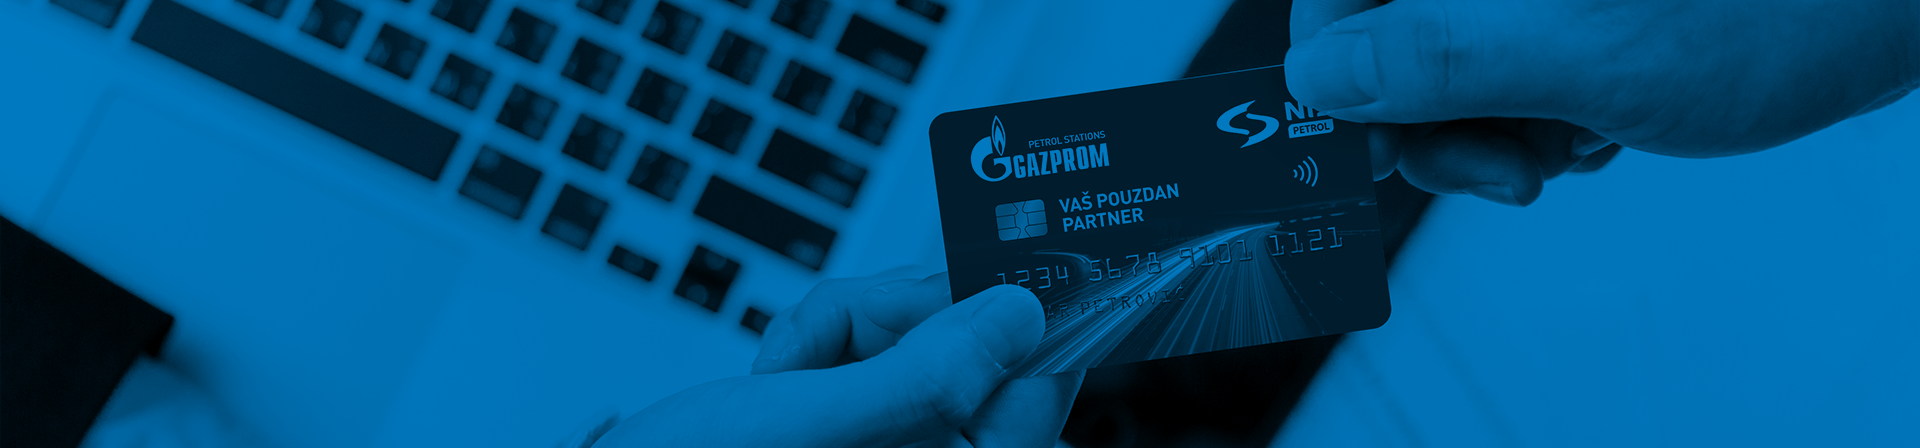 Promocije za korisnike - NIS Gazprom kartice